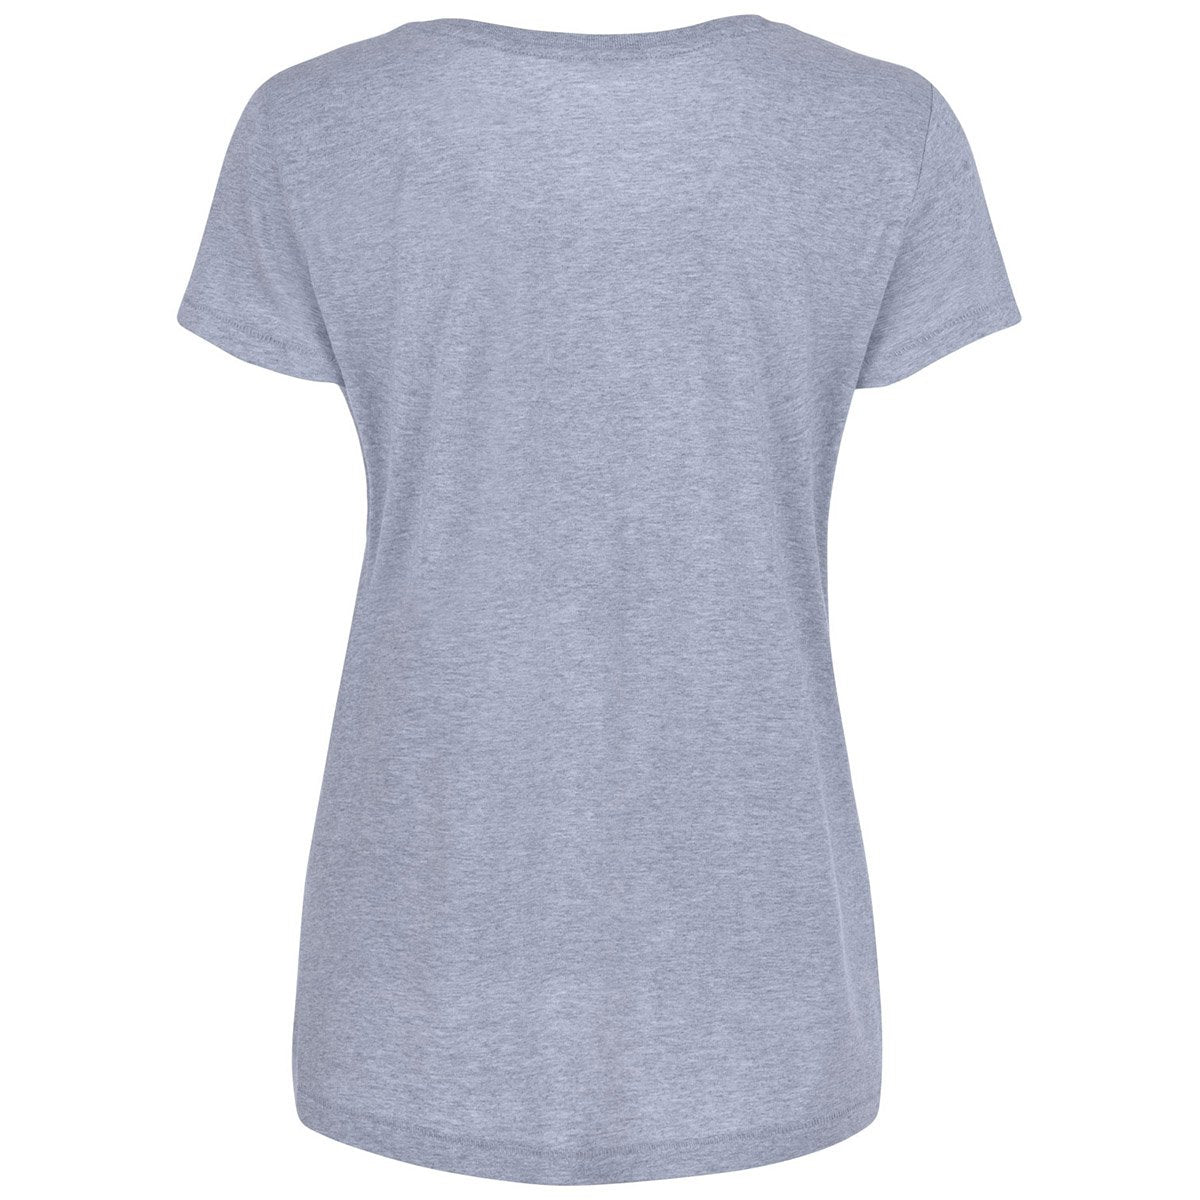 Maddox Grey Abstract Print T-shirt Back View